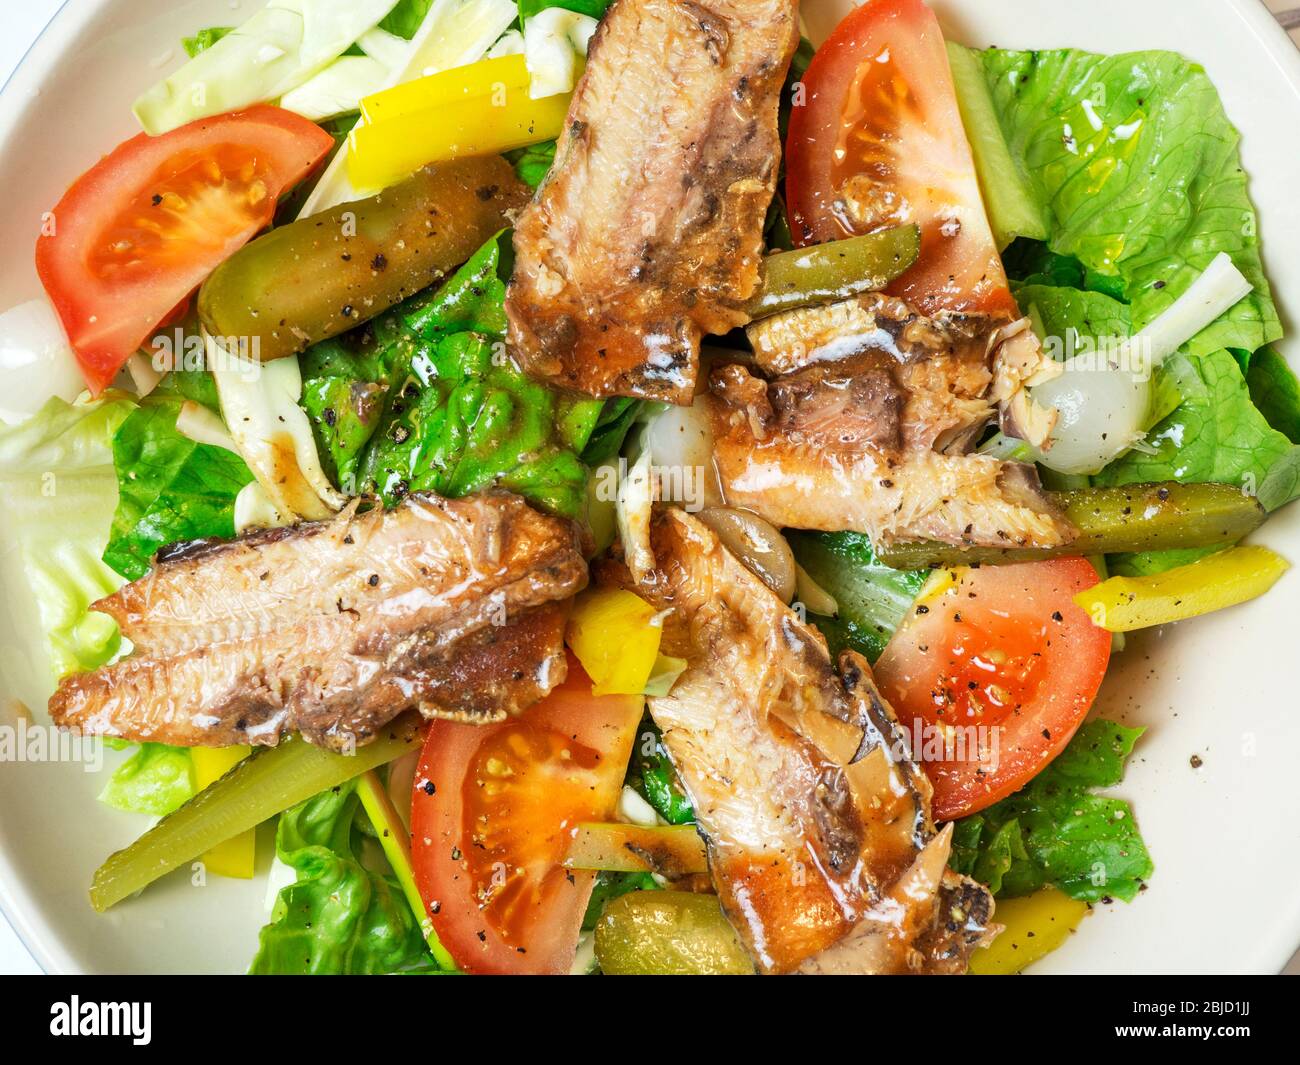 Schüssel mit Salat mit verzierten Sardellen Salat Tomaten gelbe Paprika Gurken und Zwiebeln in Scheiben geschnitten Stockfoto